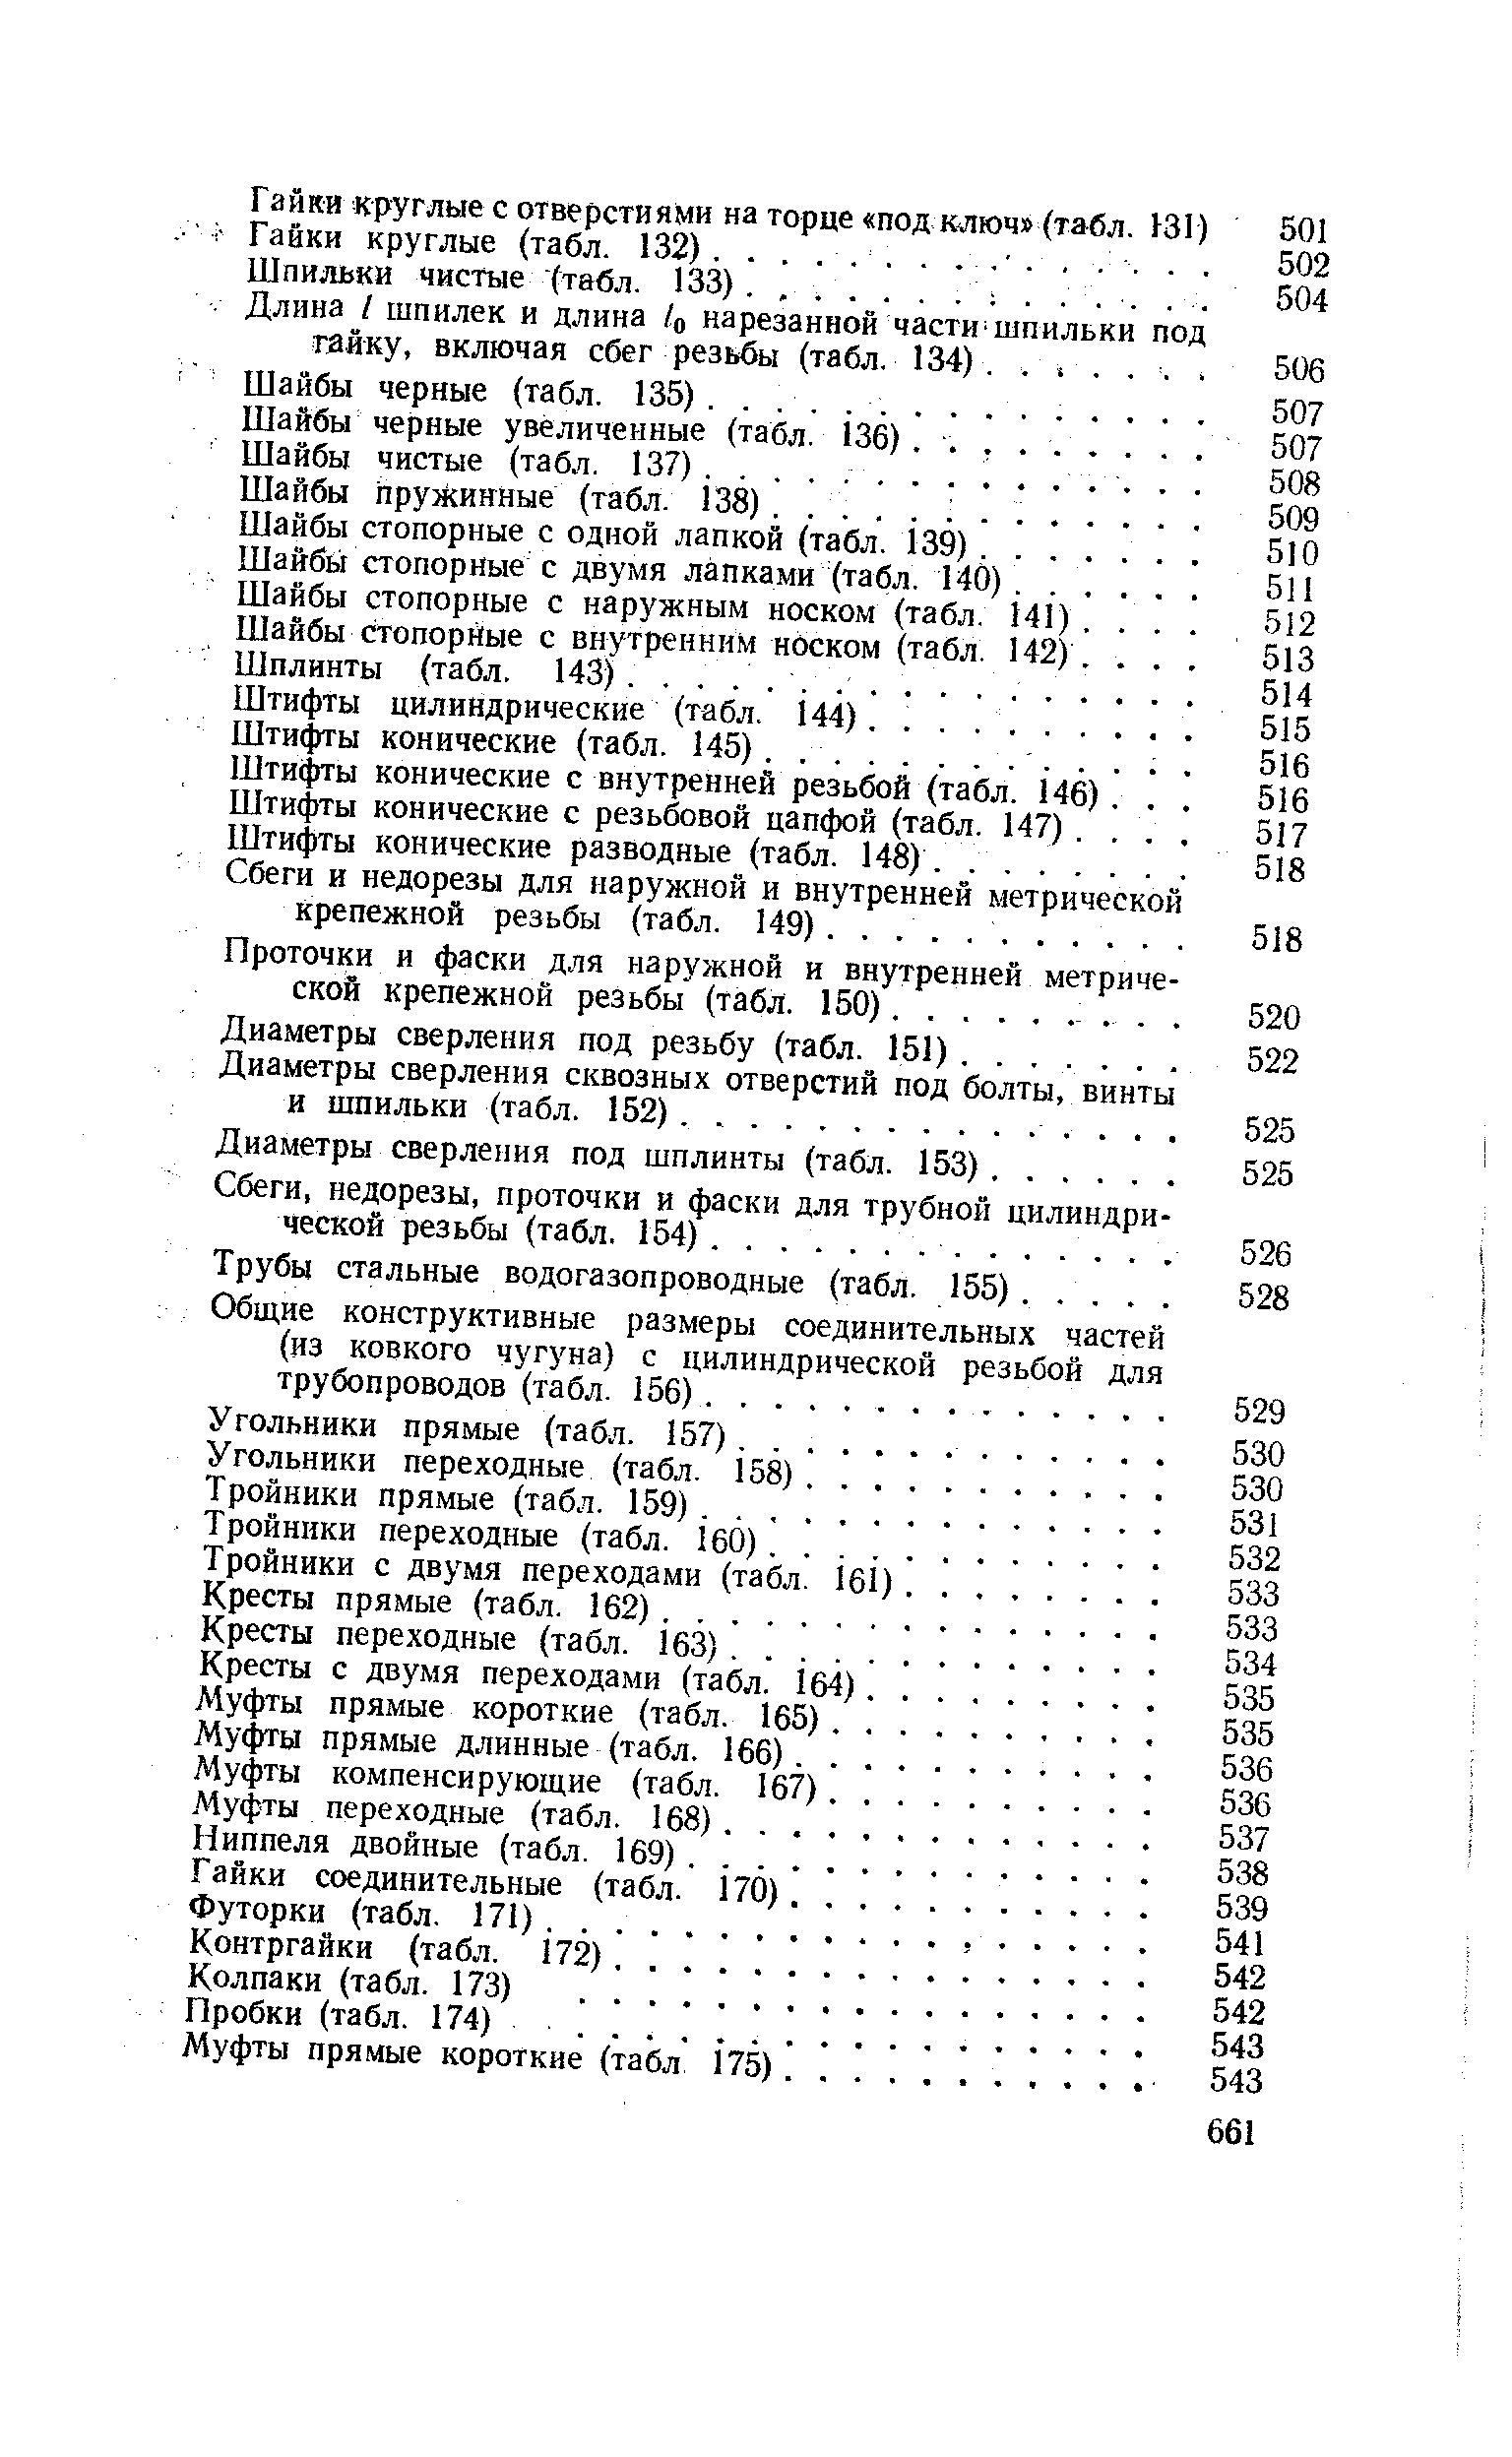 Гайки соединительные (табл. 170).
